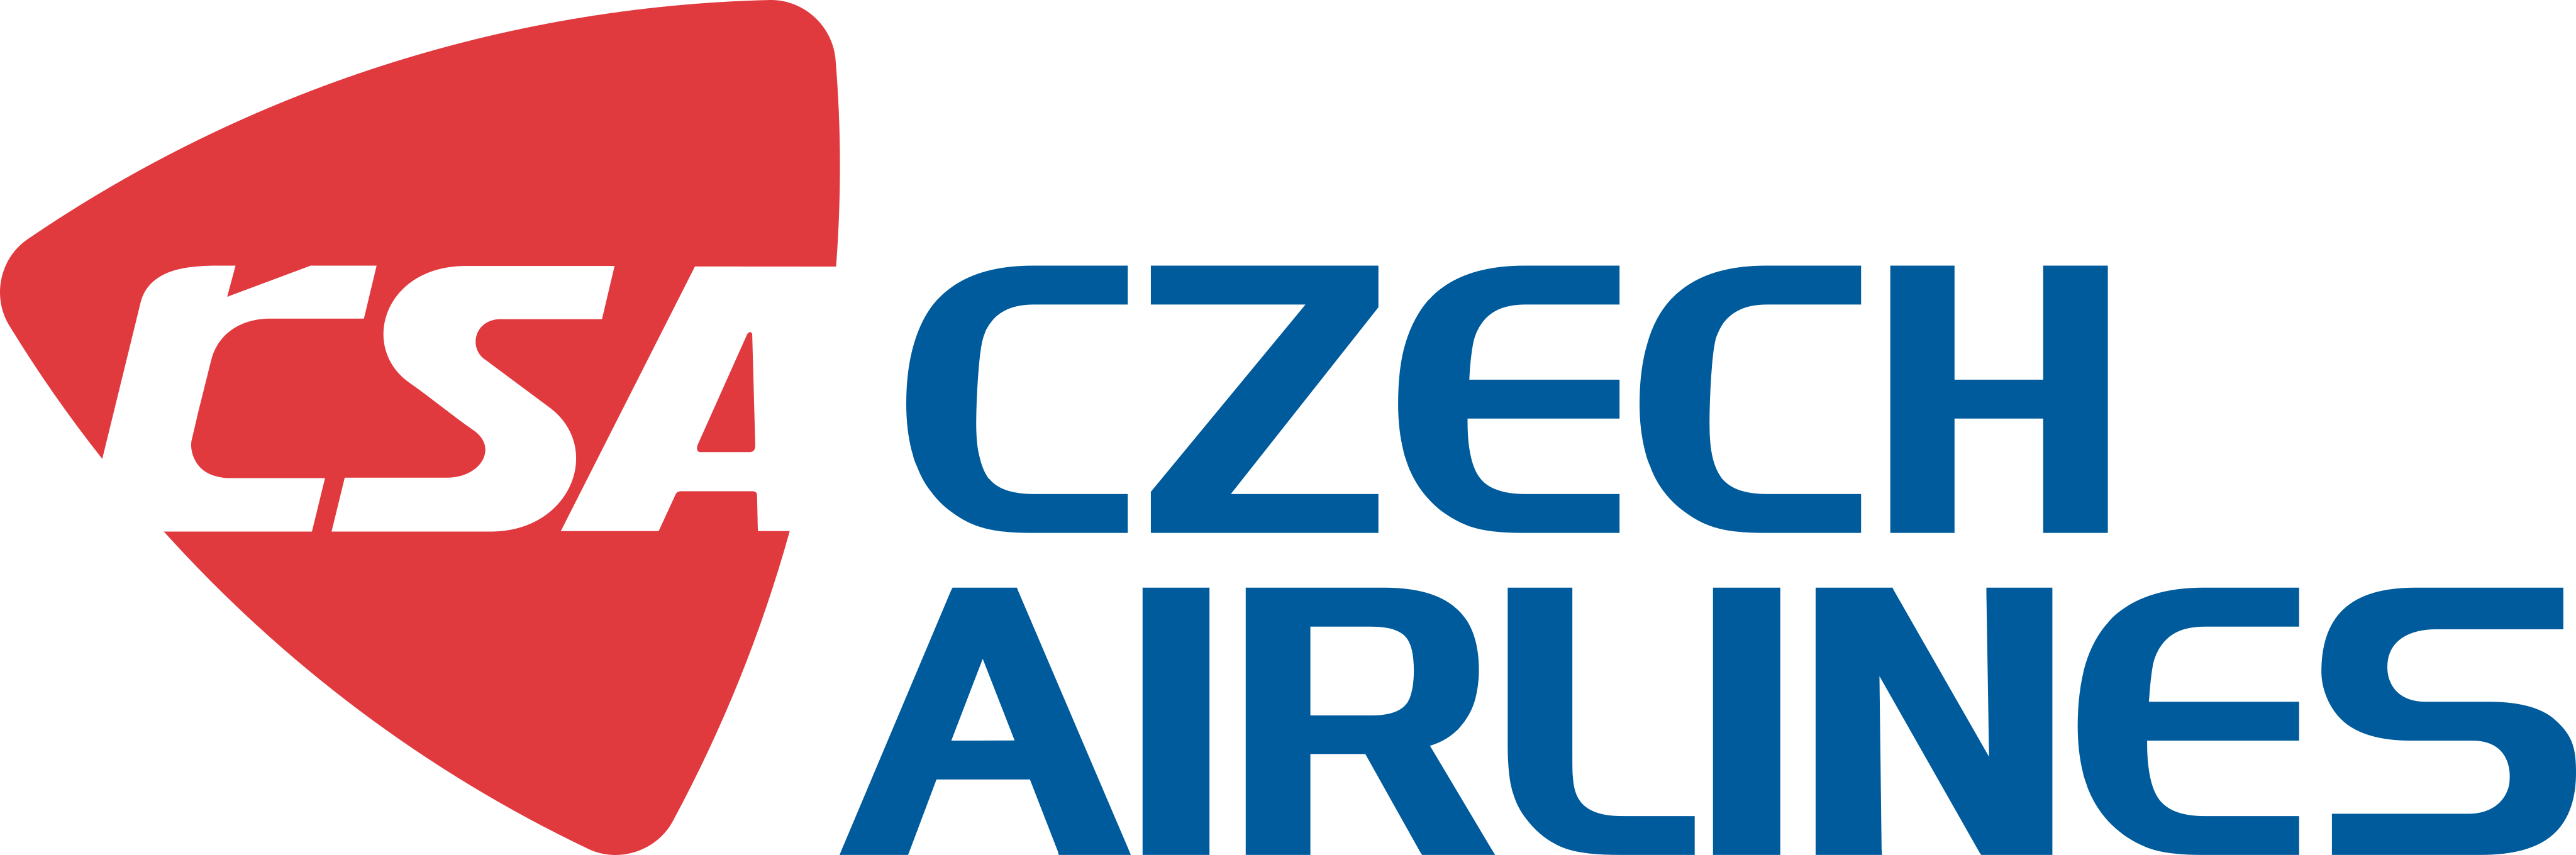 Resultado de imagen para Czech Airlines logo